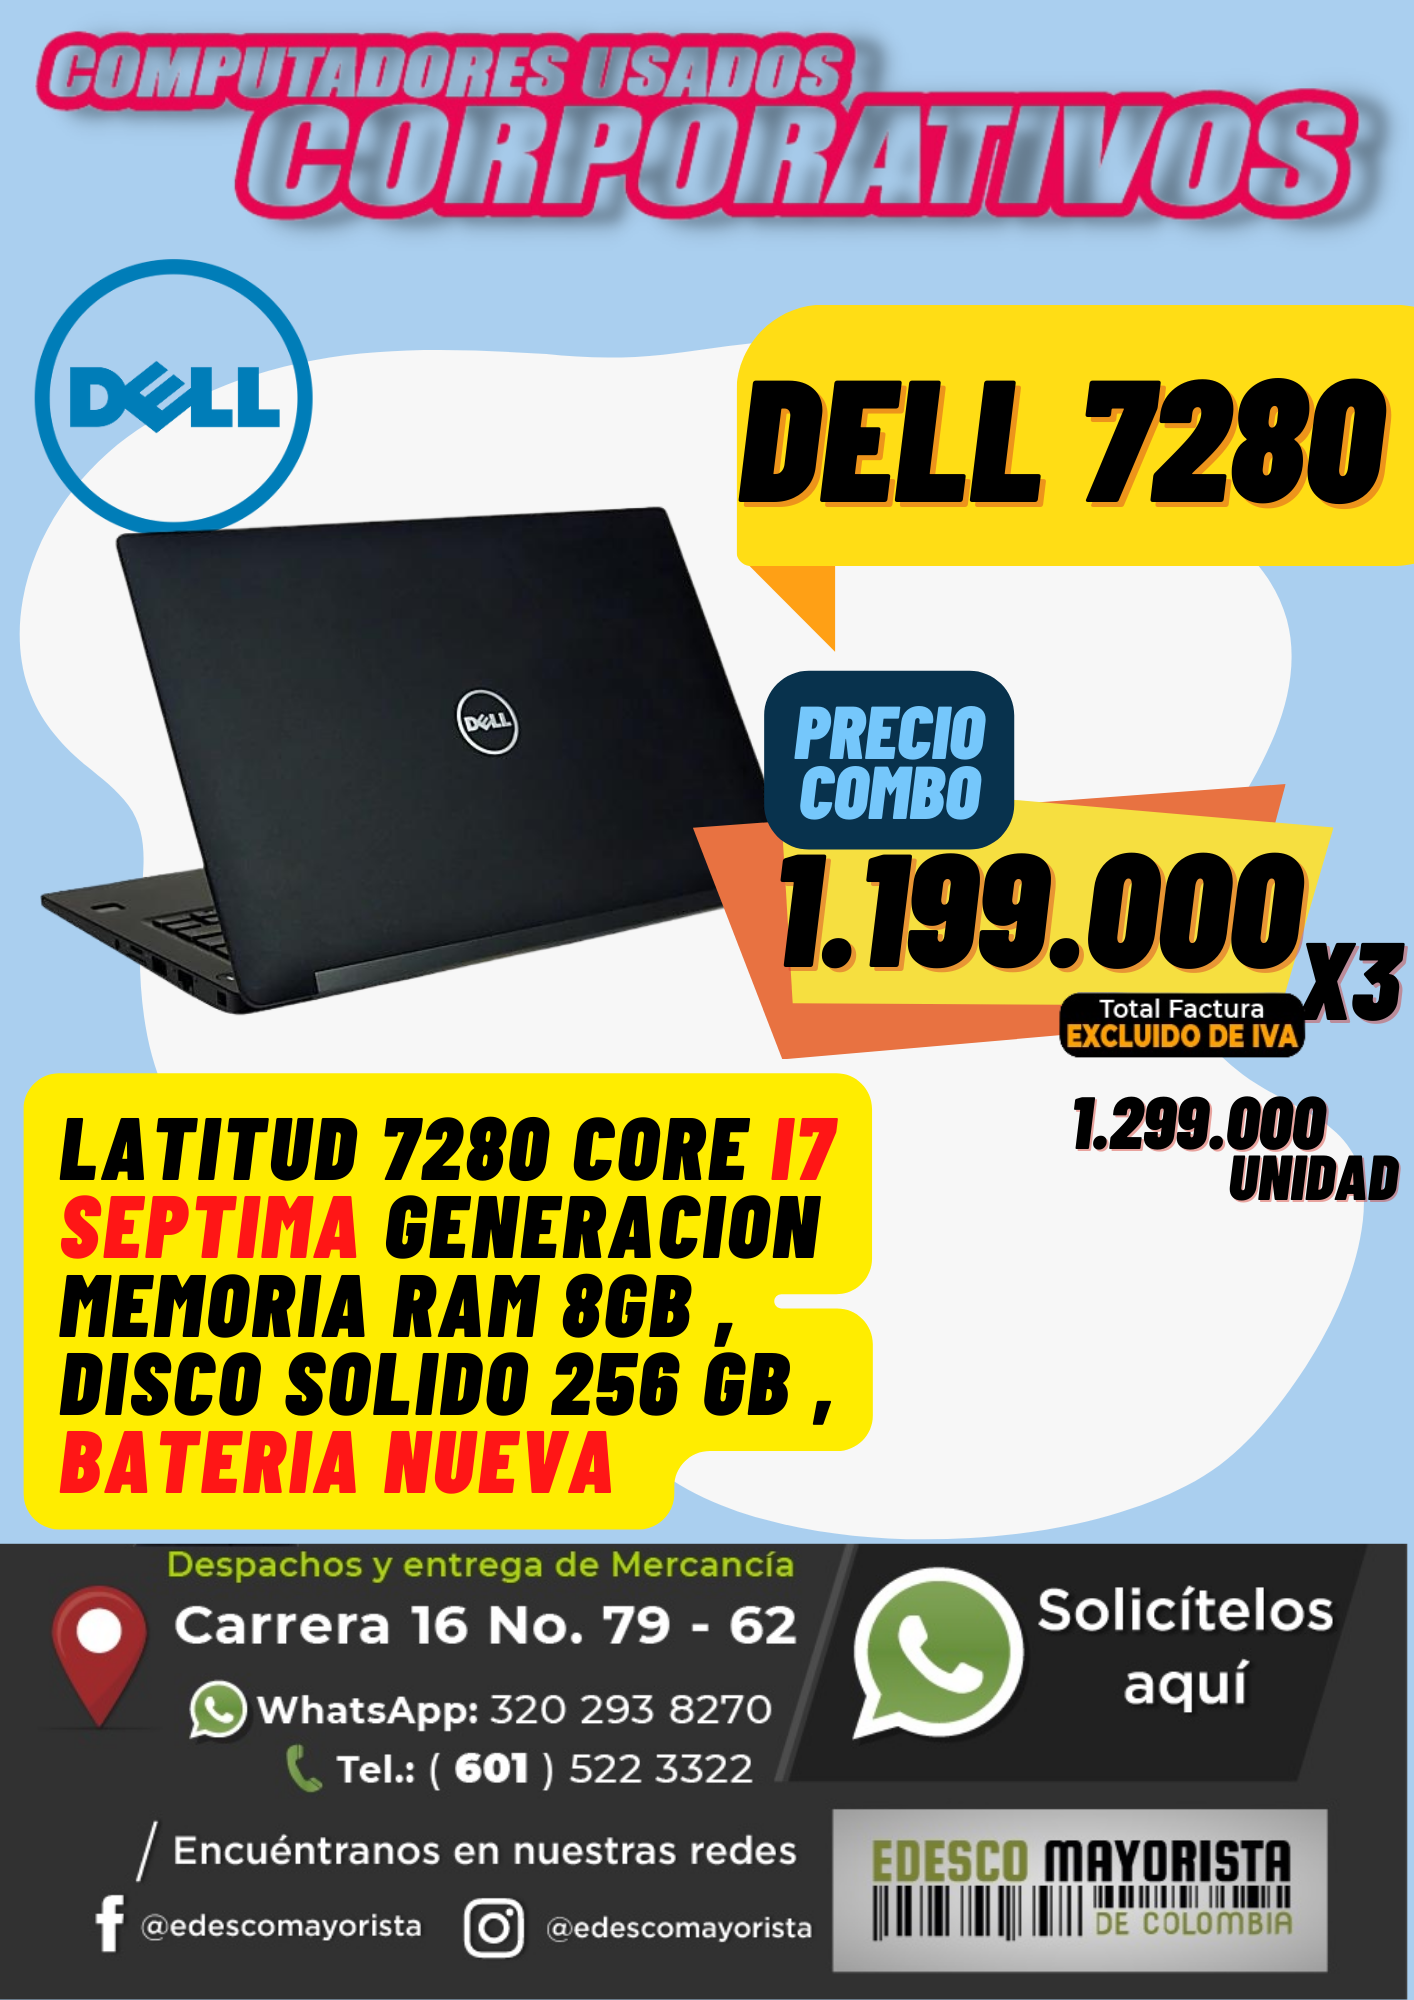 Dell 7280 core i7  séptima generación